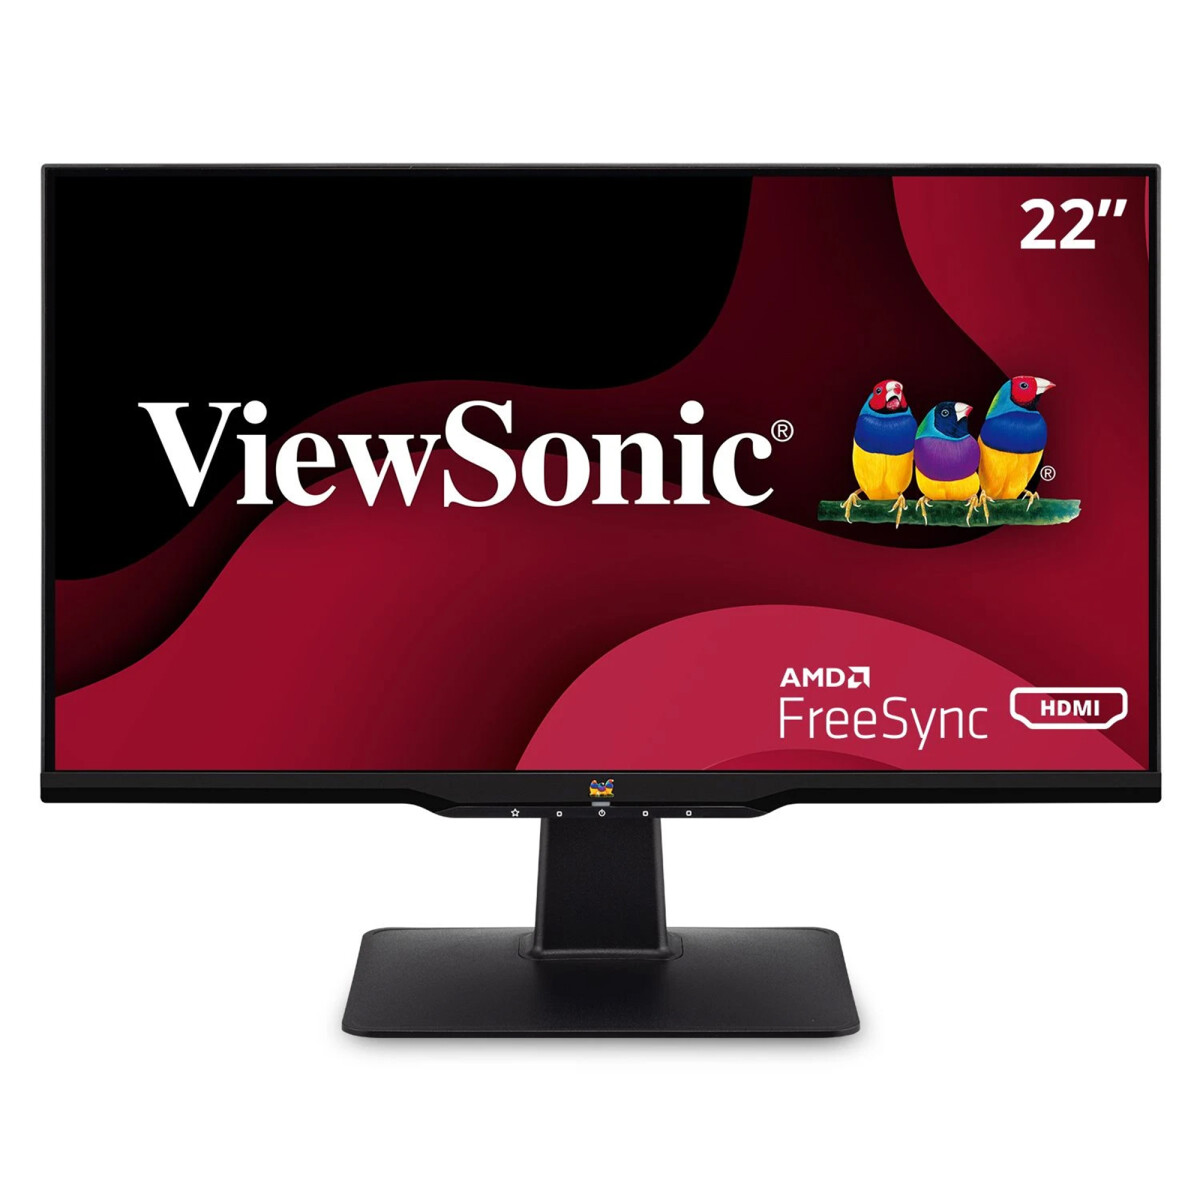 Monitor Viewsonic Va2233-h 22¨ 1920x1080 